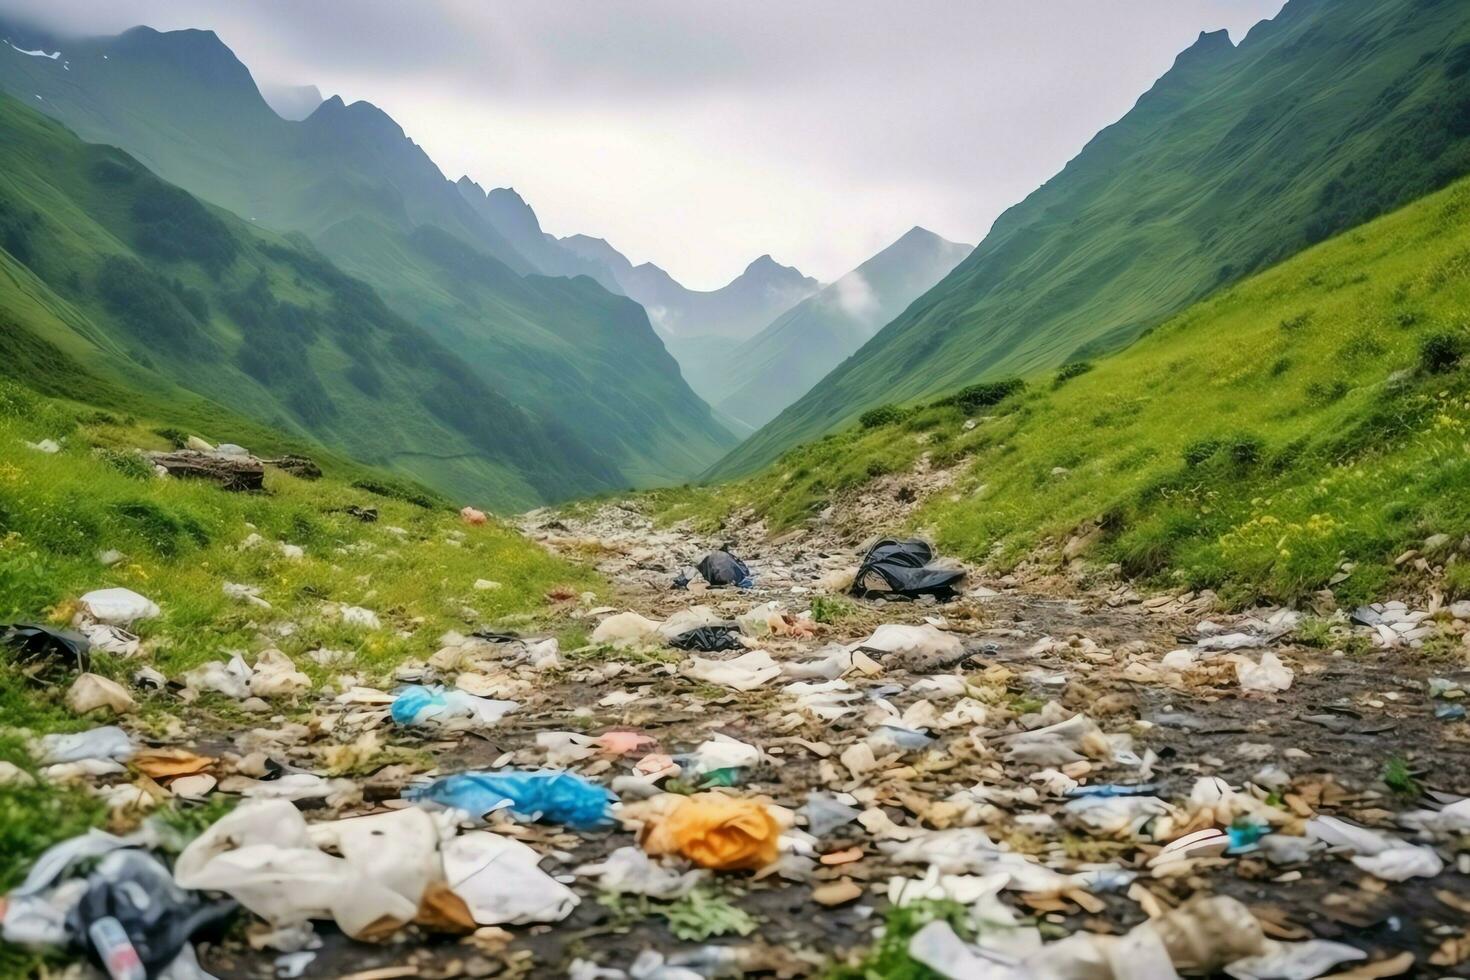 de Meio Ambiente problema plástico lixo ou Lixo dentro a montanha a partir de global aquecimento. poluição conceito de ai gerado foto